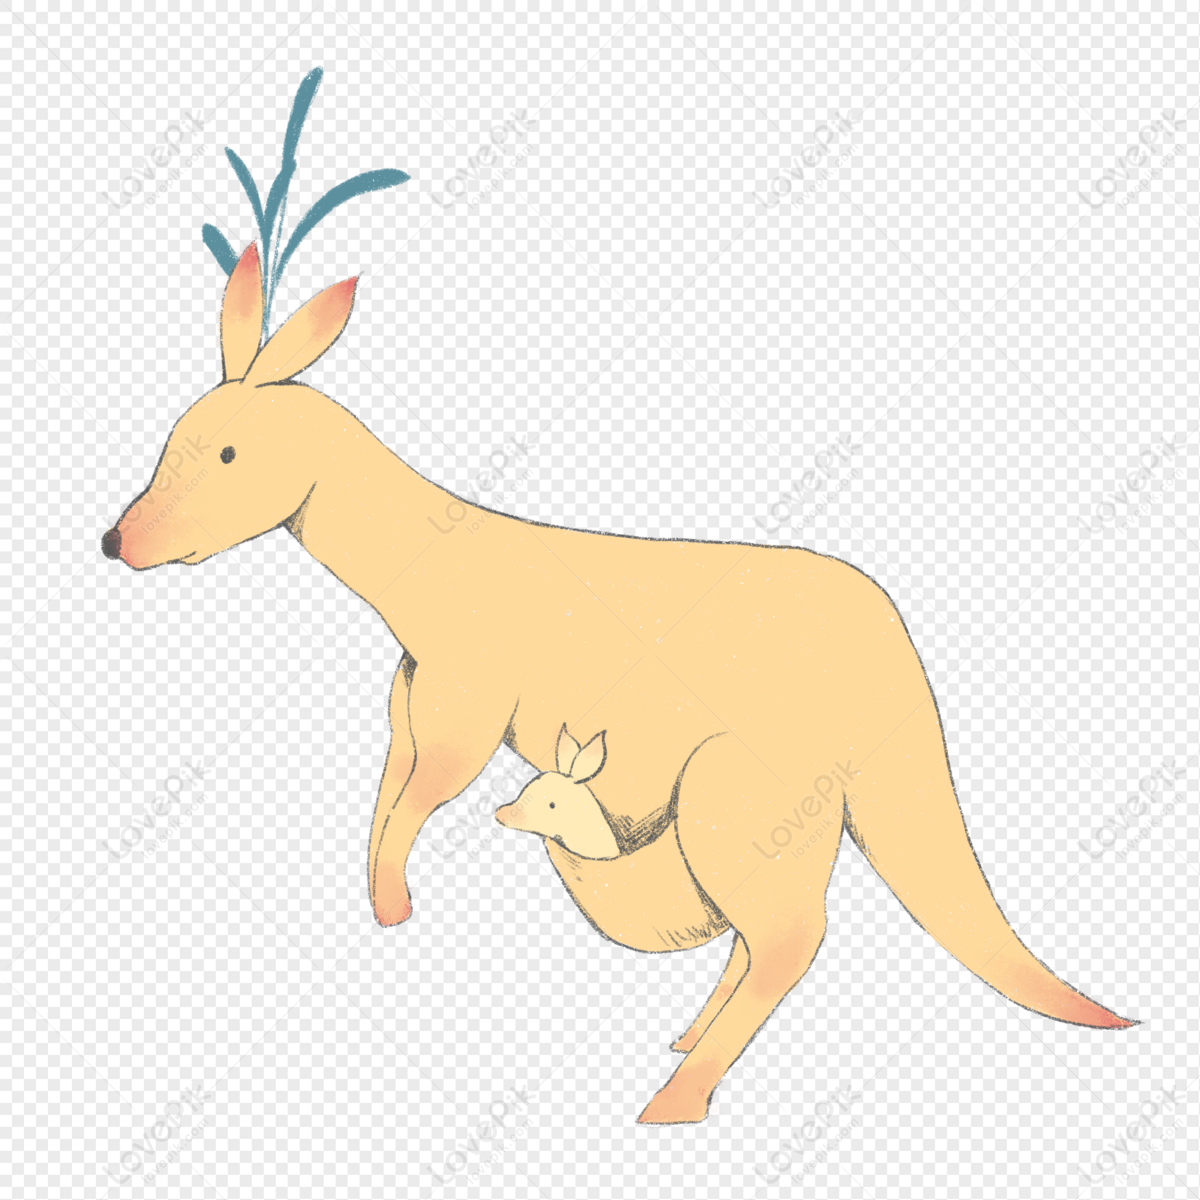 Kangaroo Animation Cartoon , Cartoon Kangaroo transparent background PNG  clipart | HiClipart